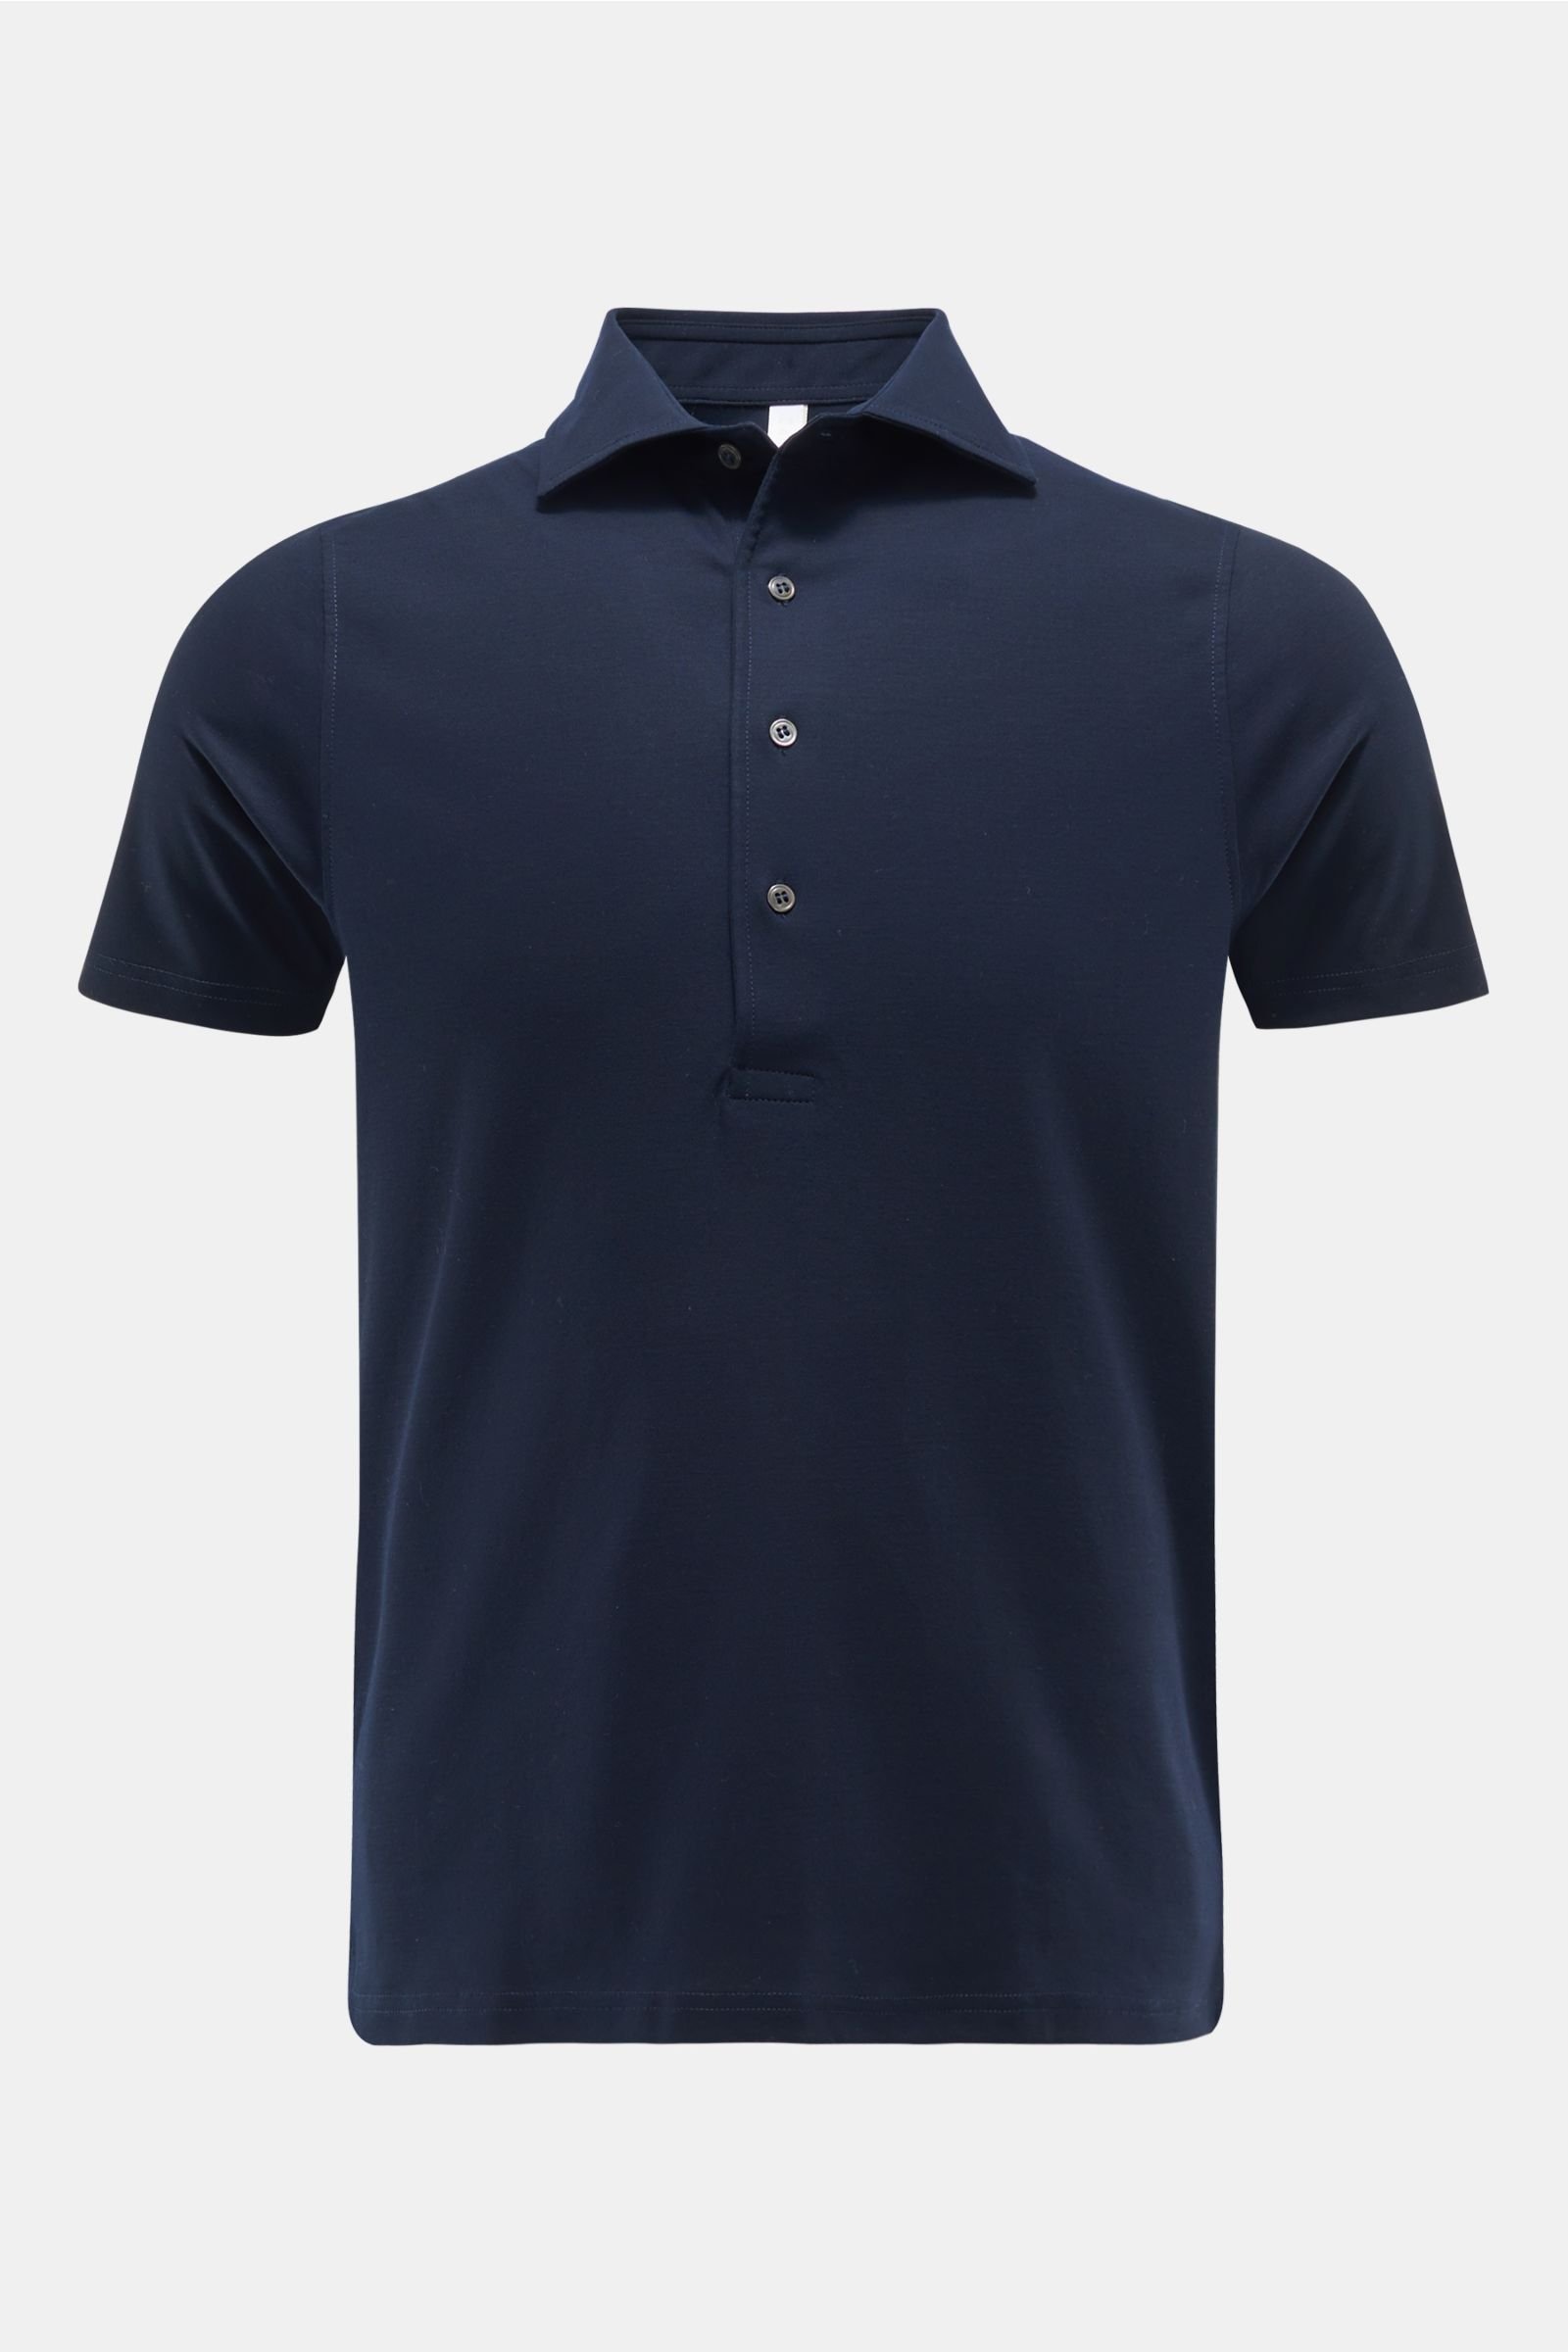 Polo shirt navy